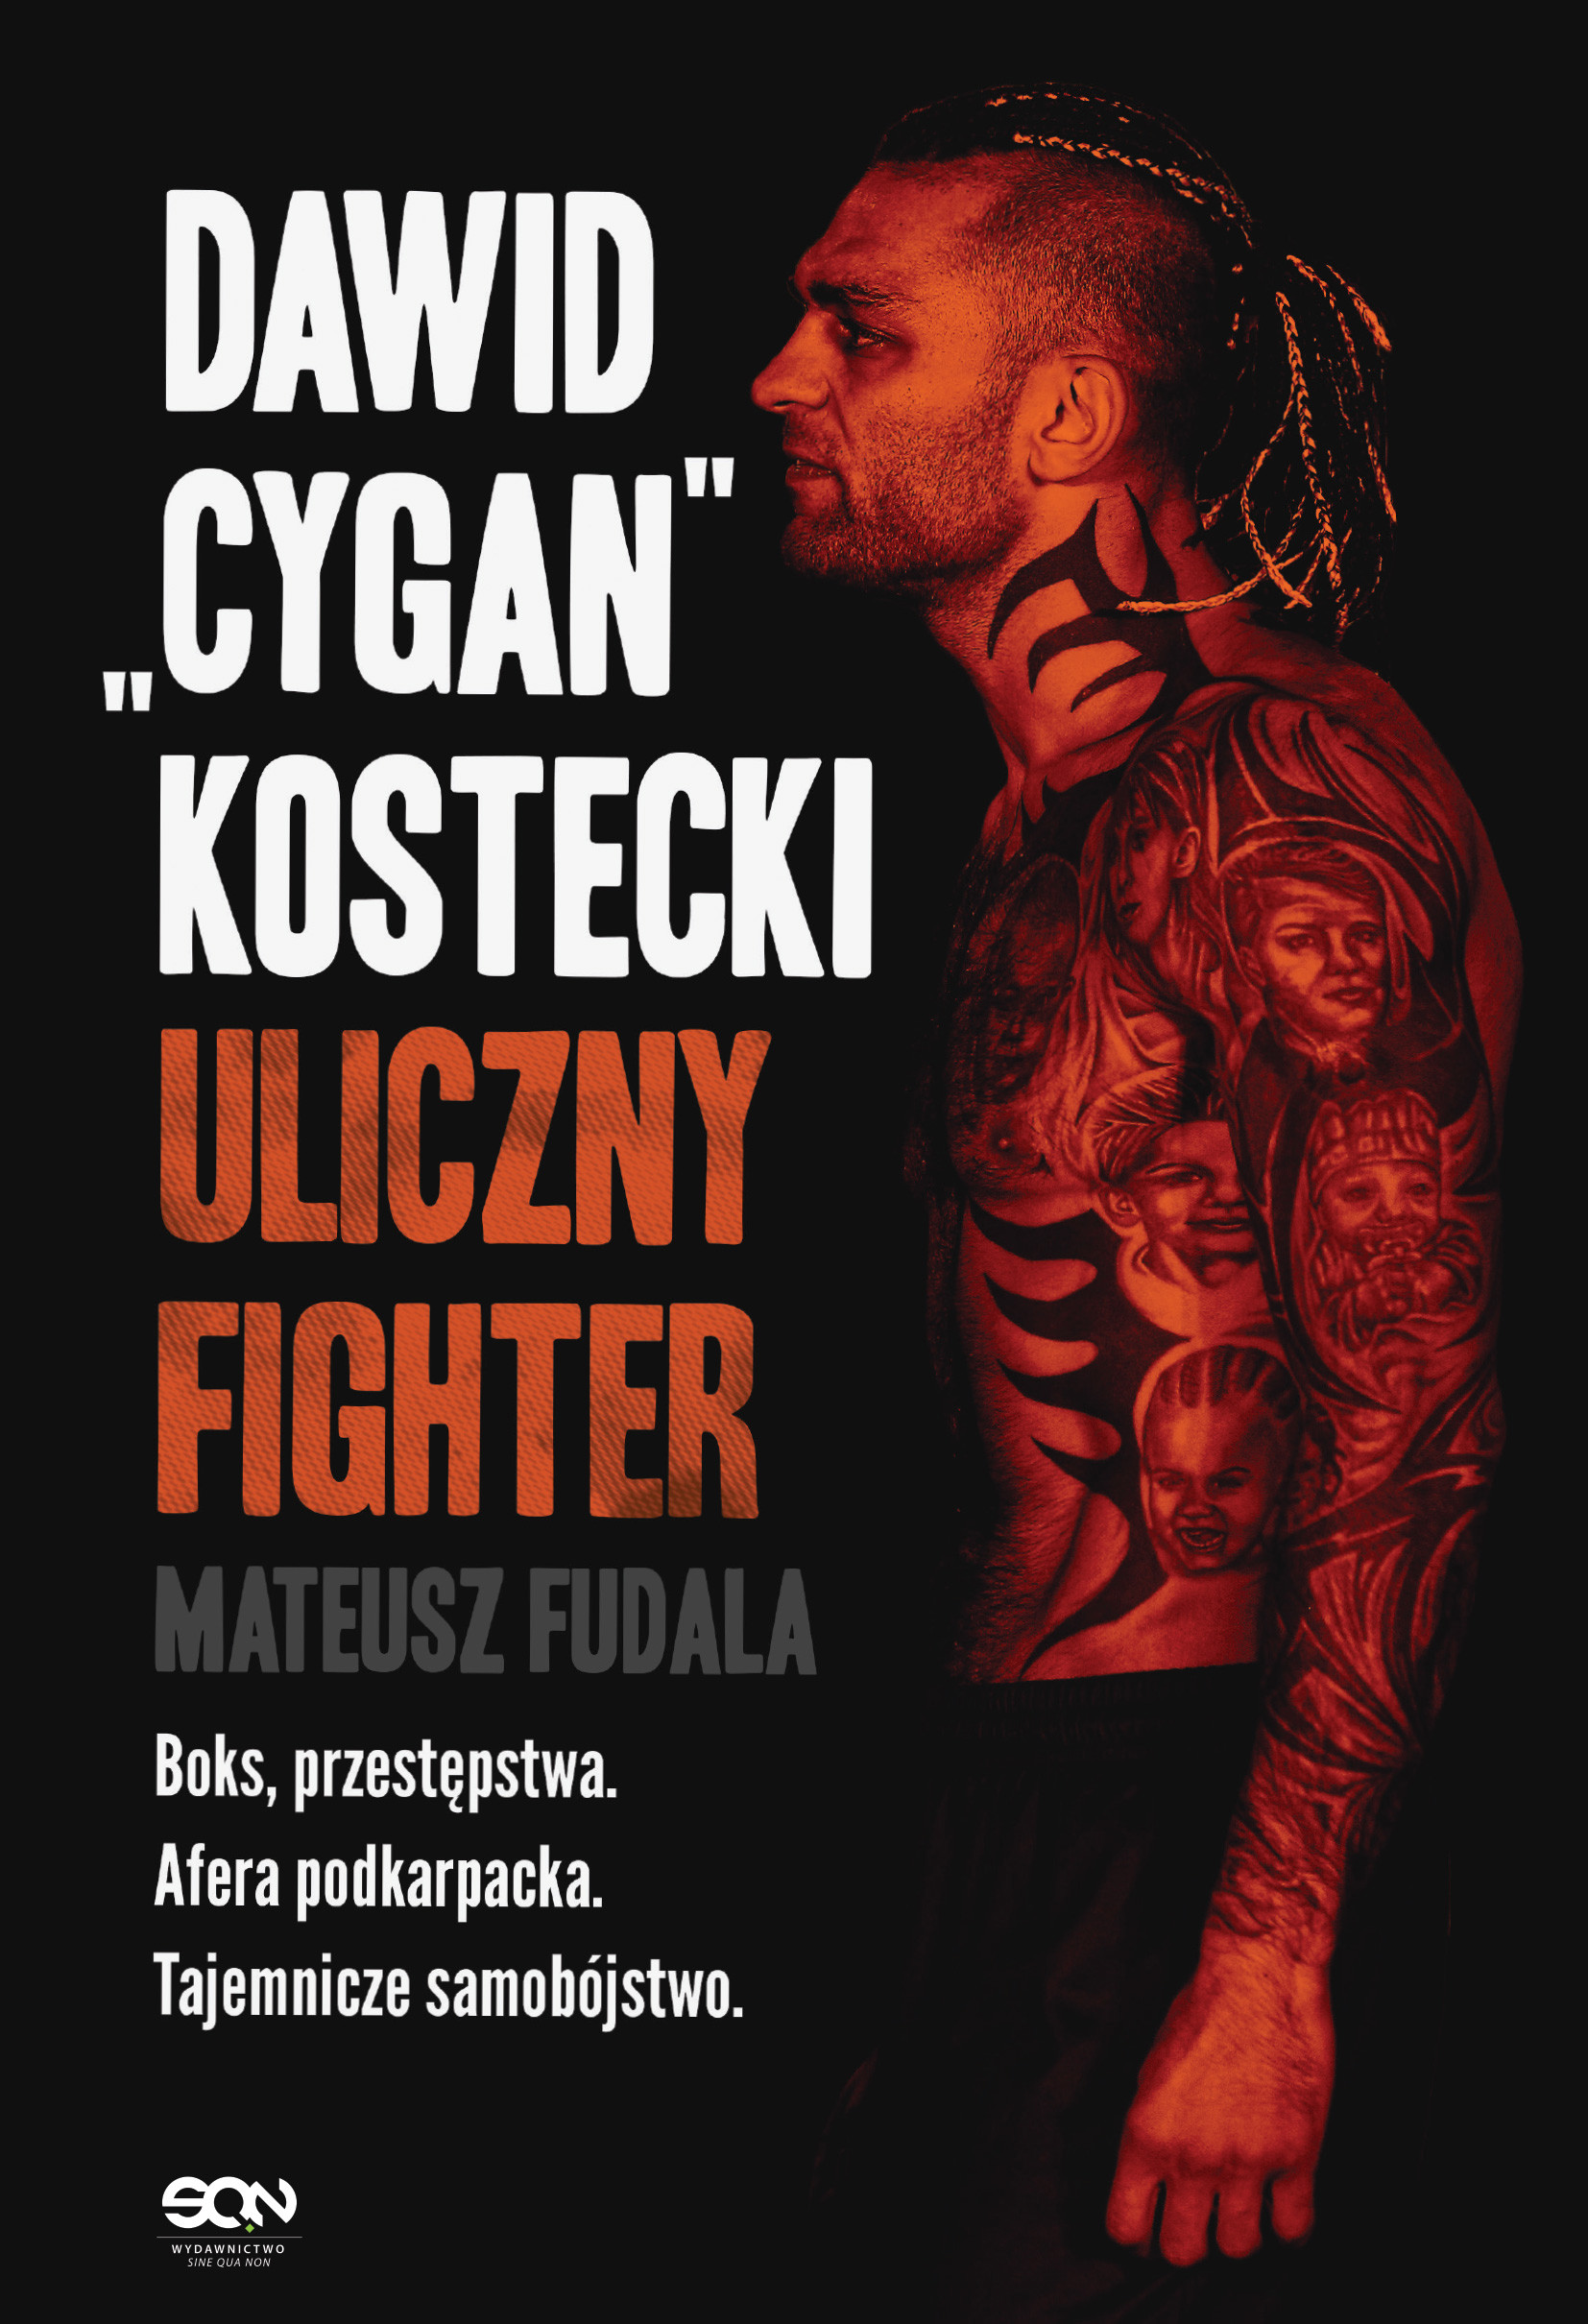 Okładka:Dawid "Cygan" Kostecki. Uliczny fighter 